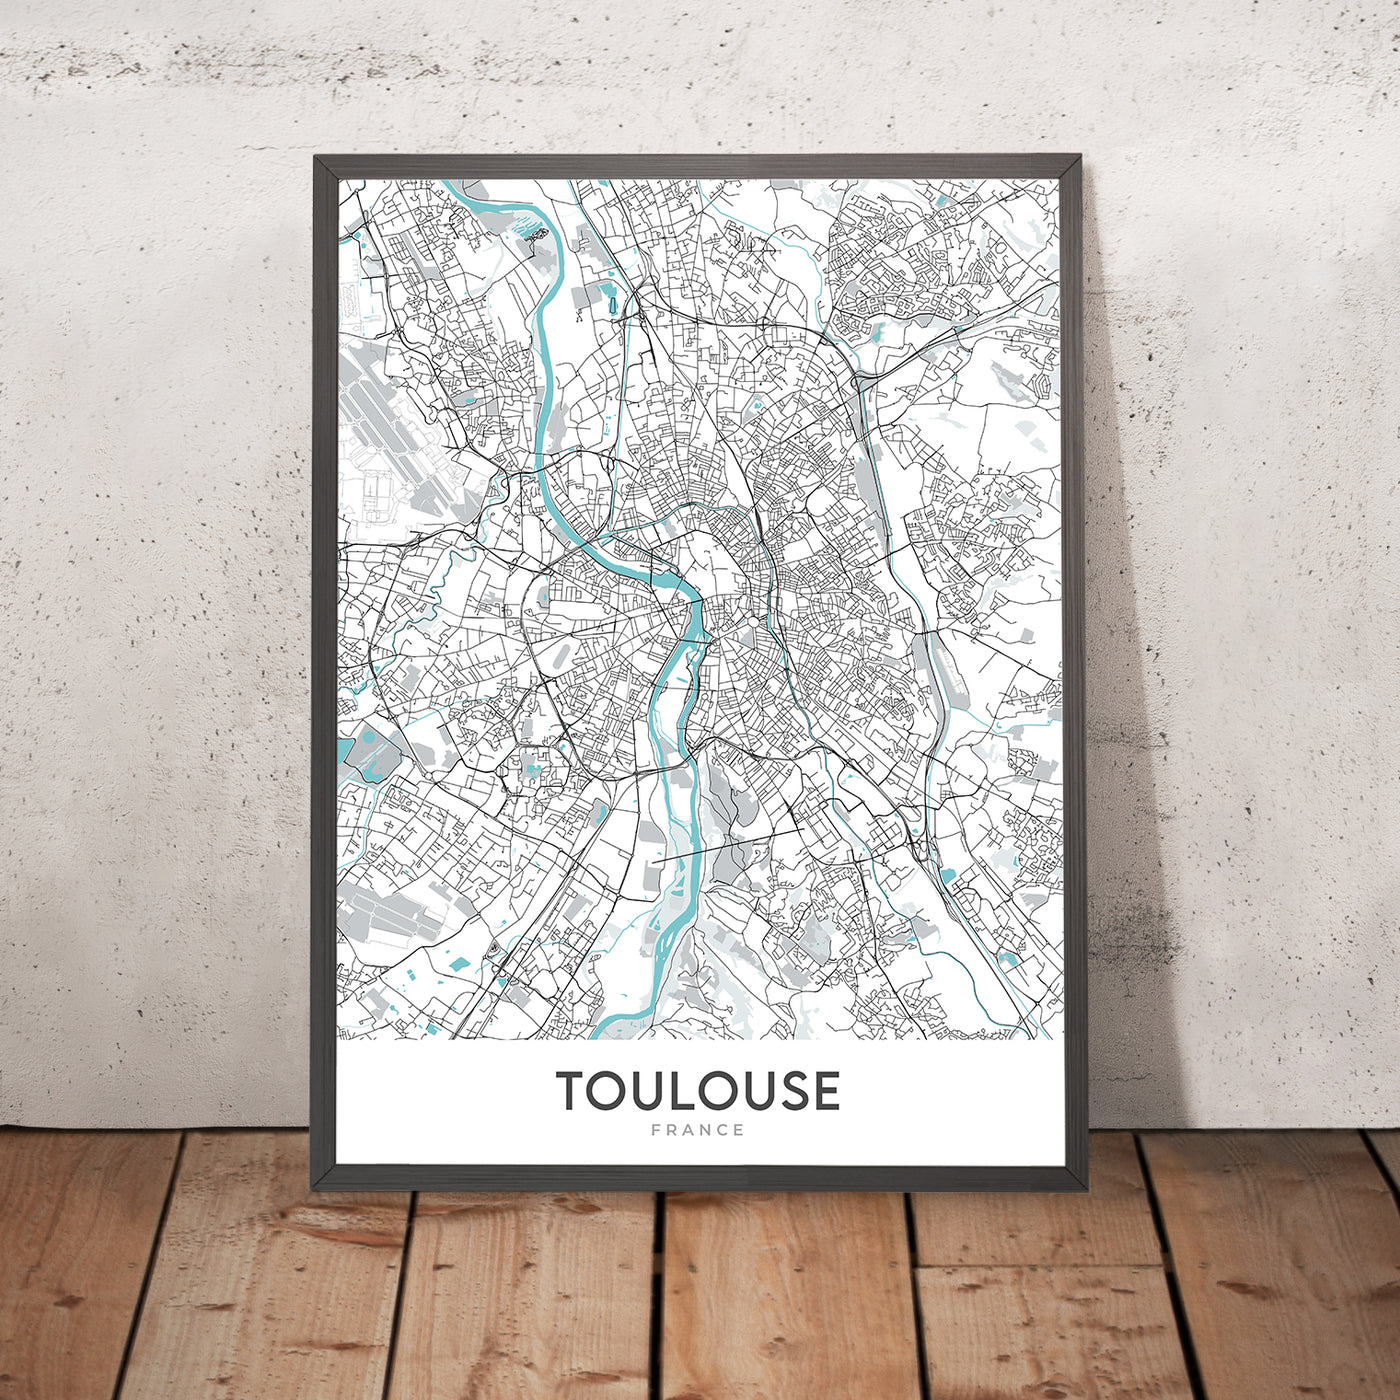 Plan de la ville moderne de Toulouse, France : Saint-Sernin, Pont Neuf, Place du Capitole, Canal du Midi, Garonne